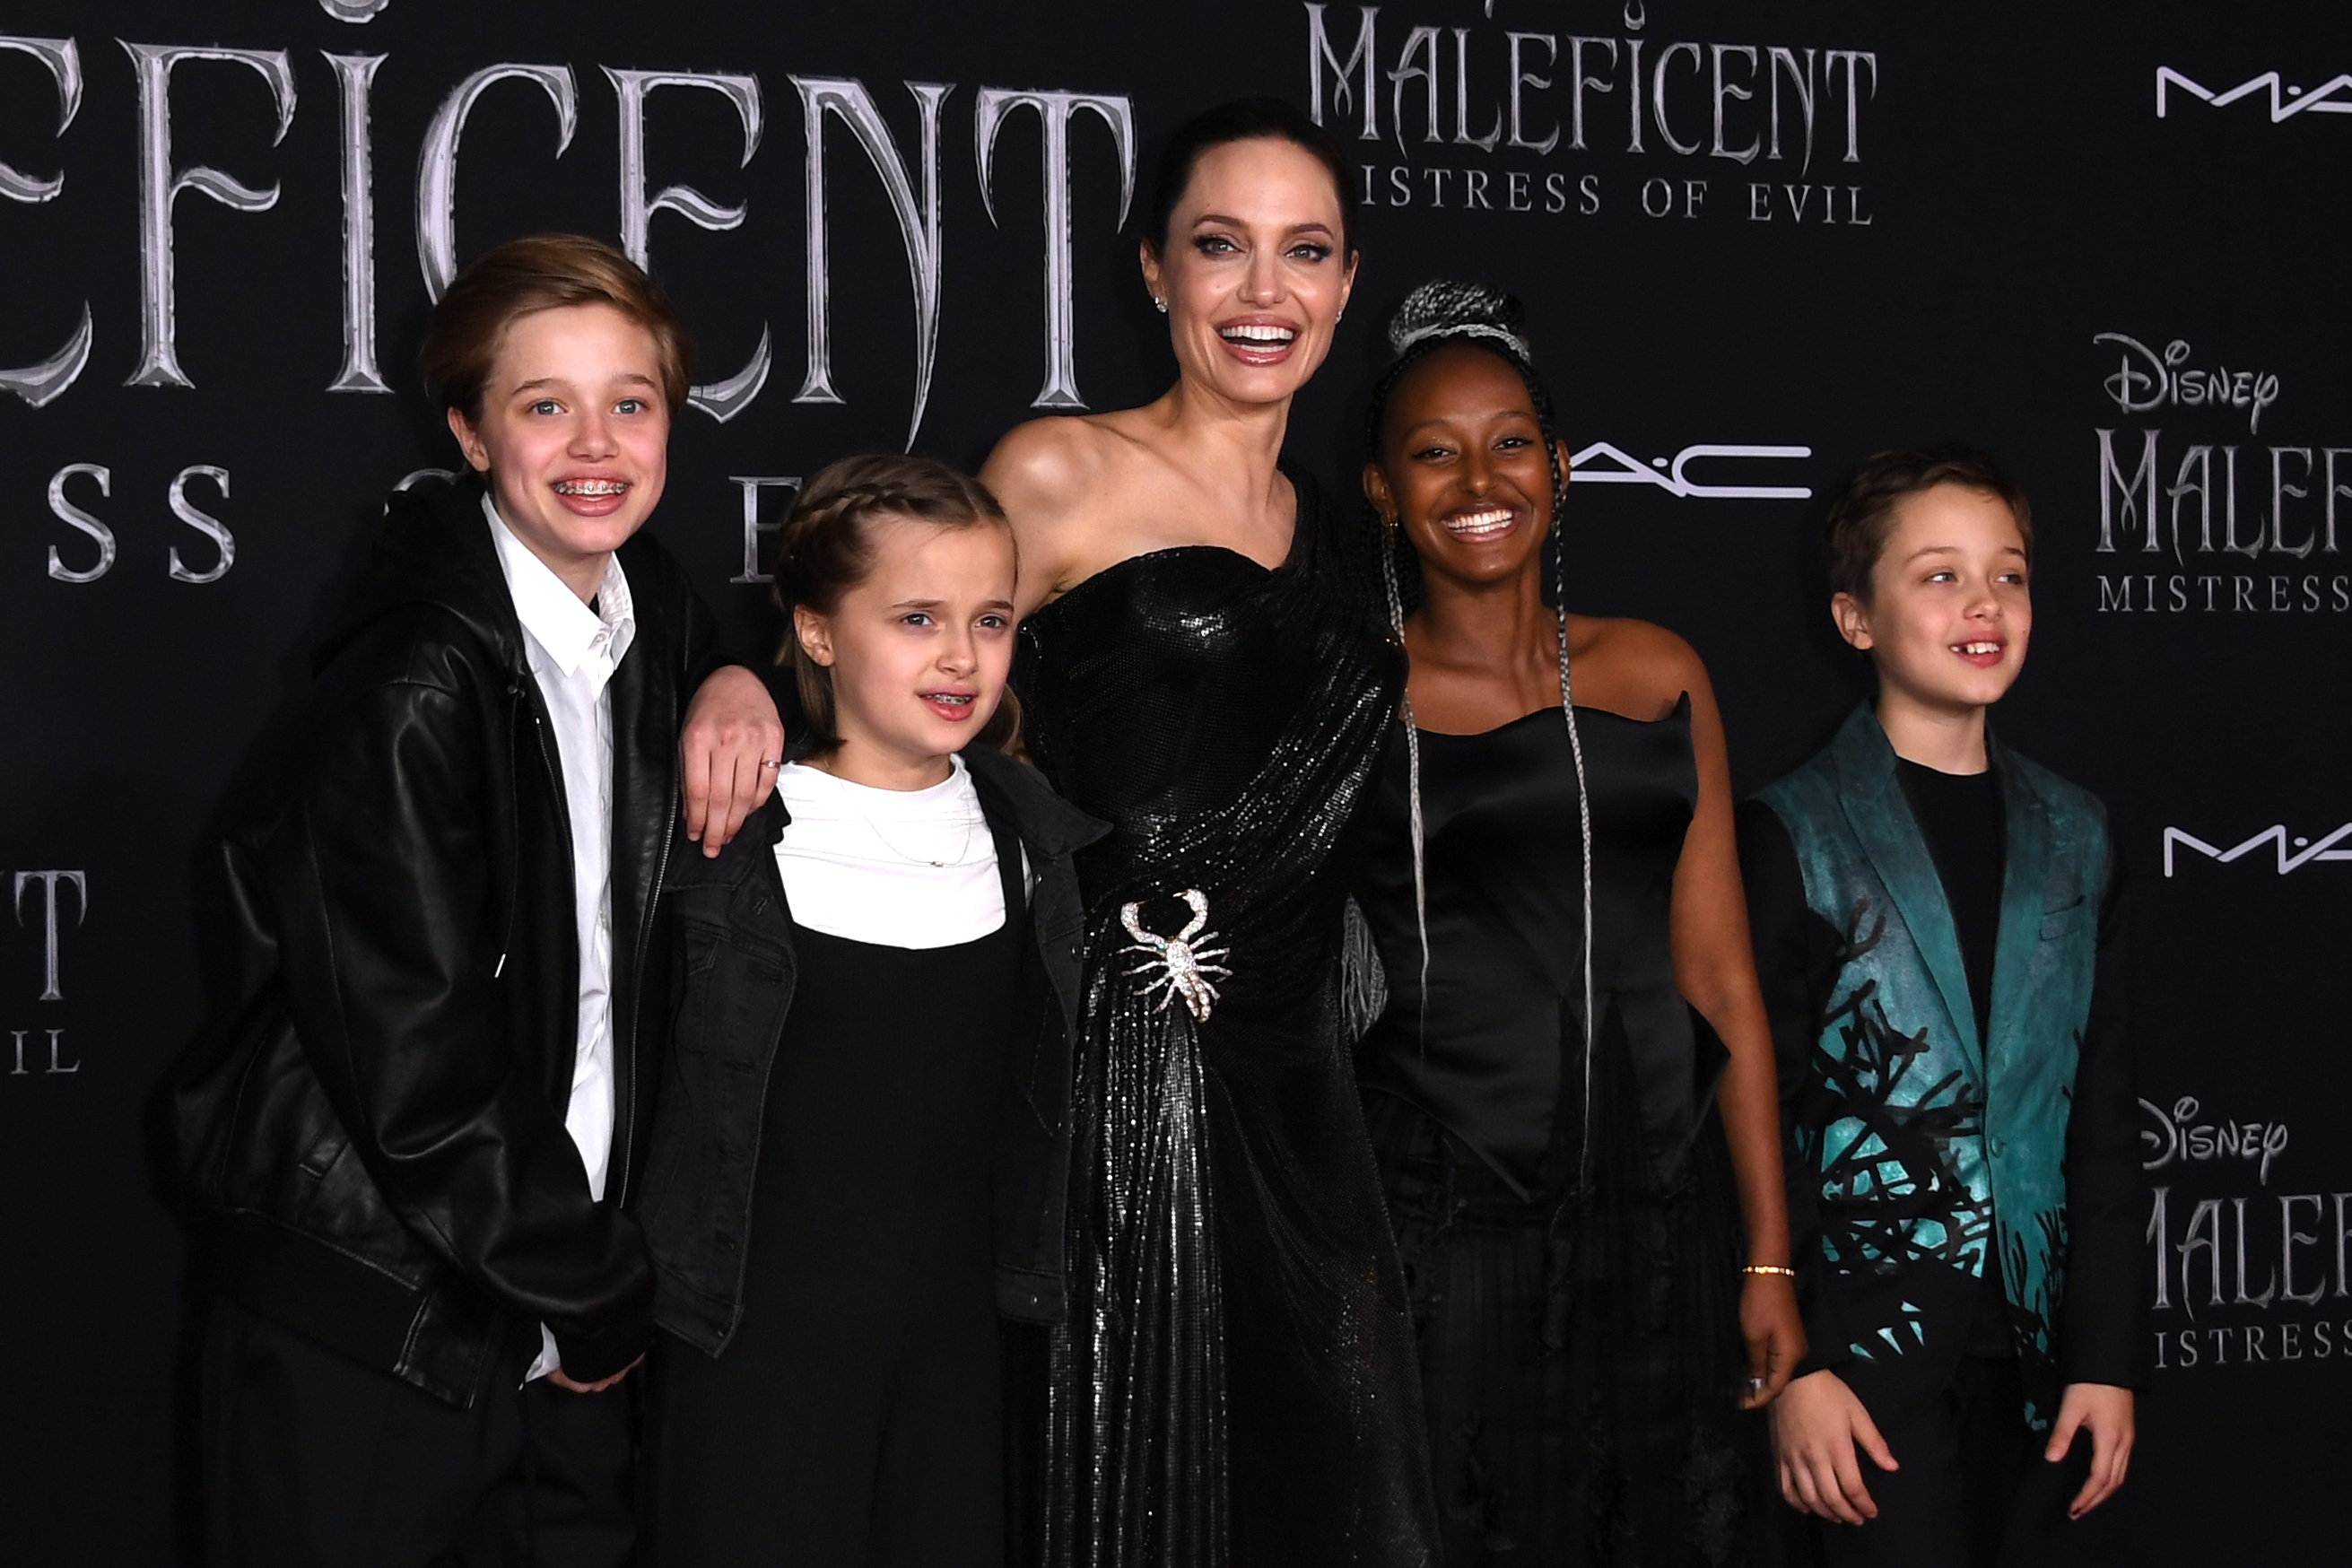 Shiloh, Vivienne, Zahara y Knox Jolie-Pitt llegan al estreno mundial de la película de Disney "Maleficent: Mistress of Evil" de Disney en Hollywood el 30 de septiembre de 2019 | Foto: Getty Images